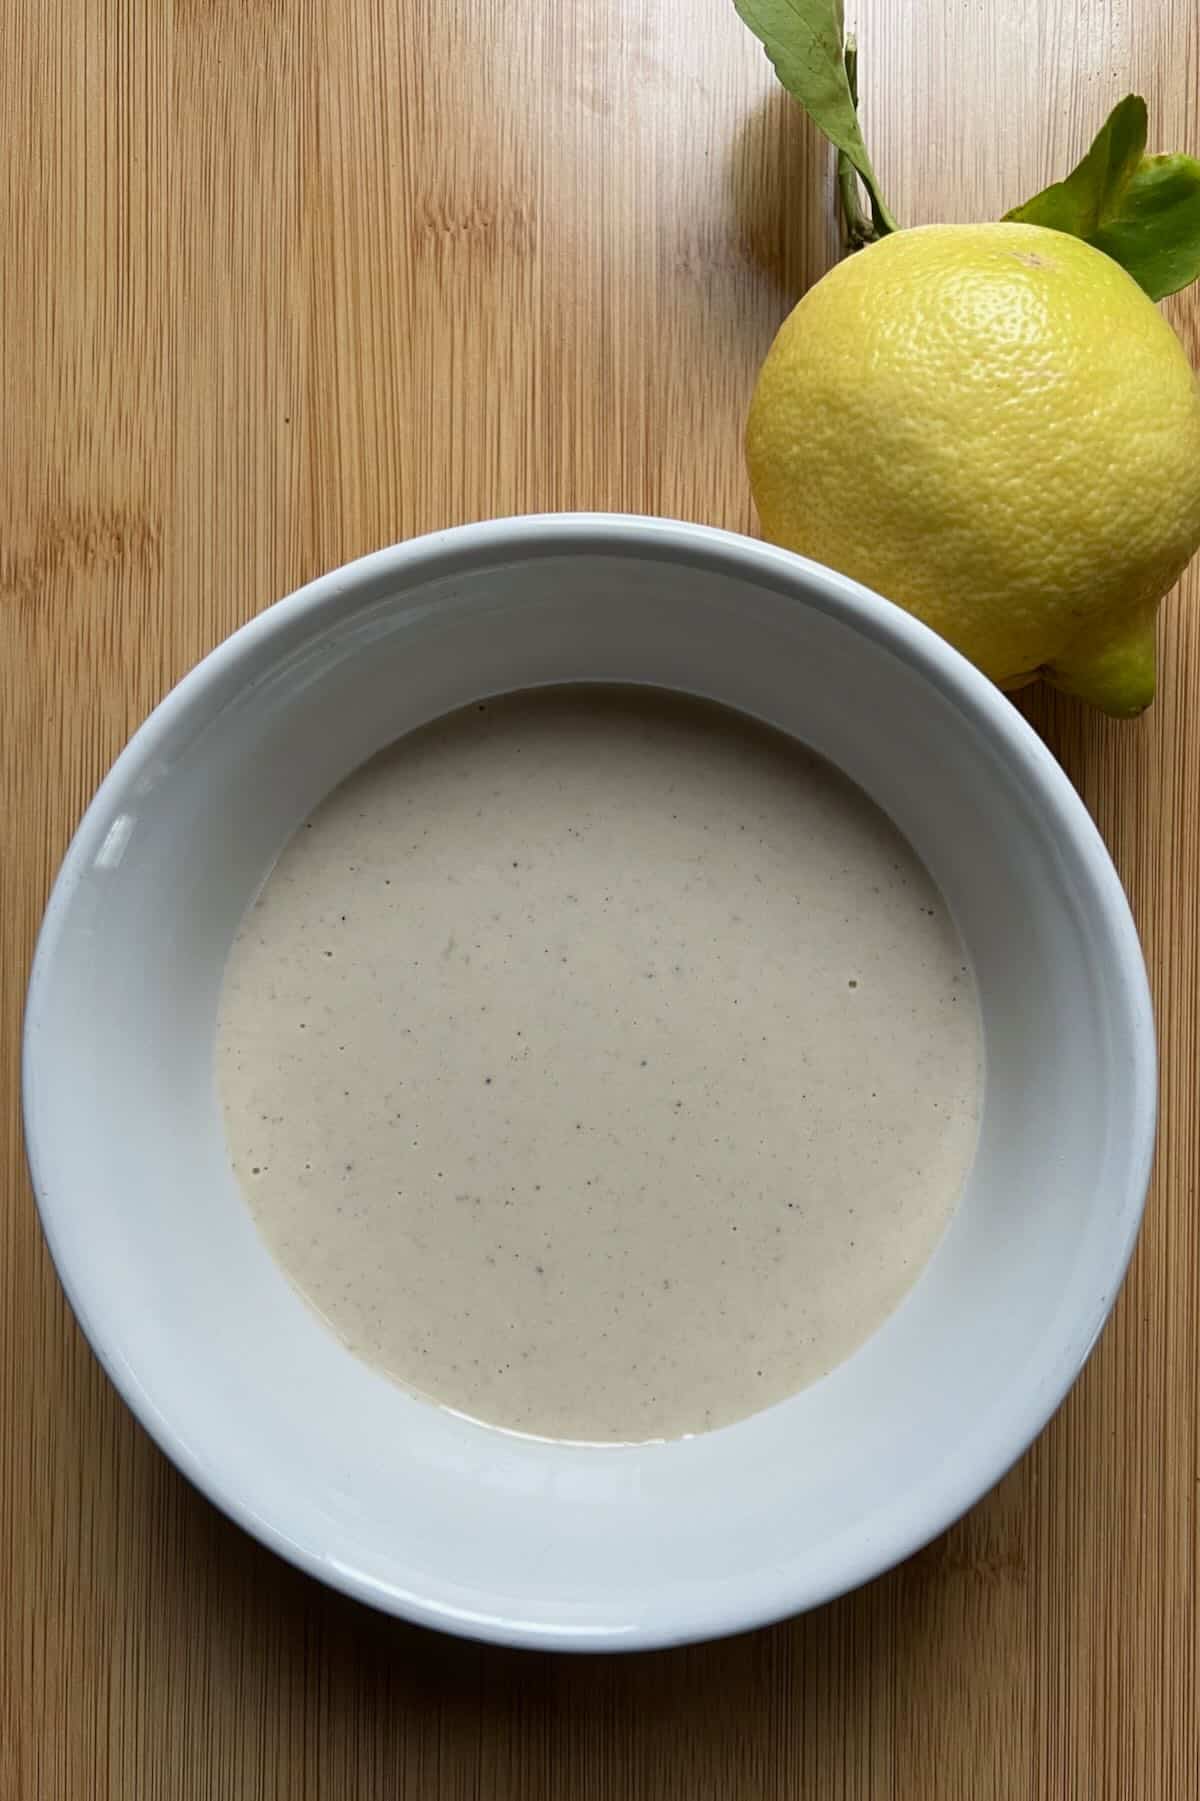 Lemon tahini sauce in a bowl